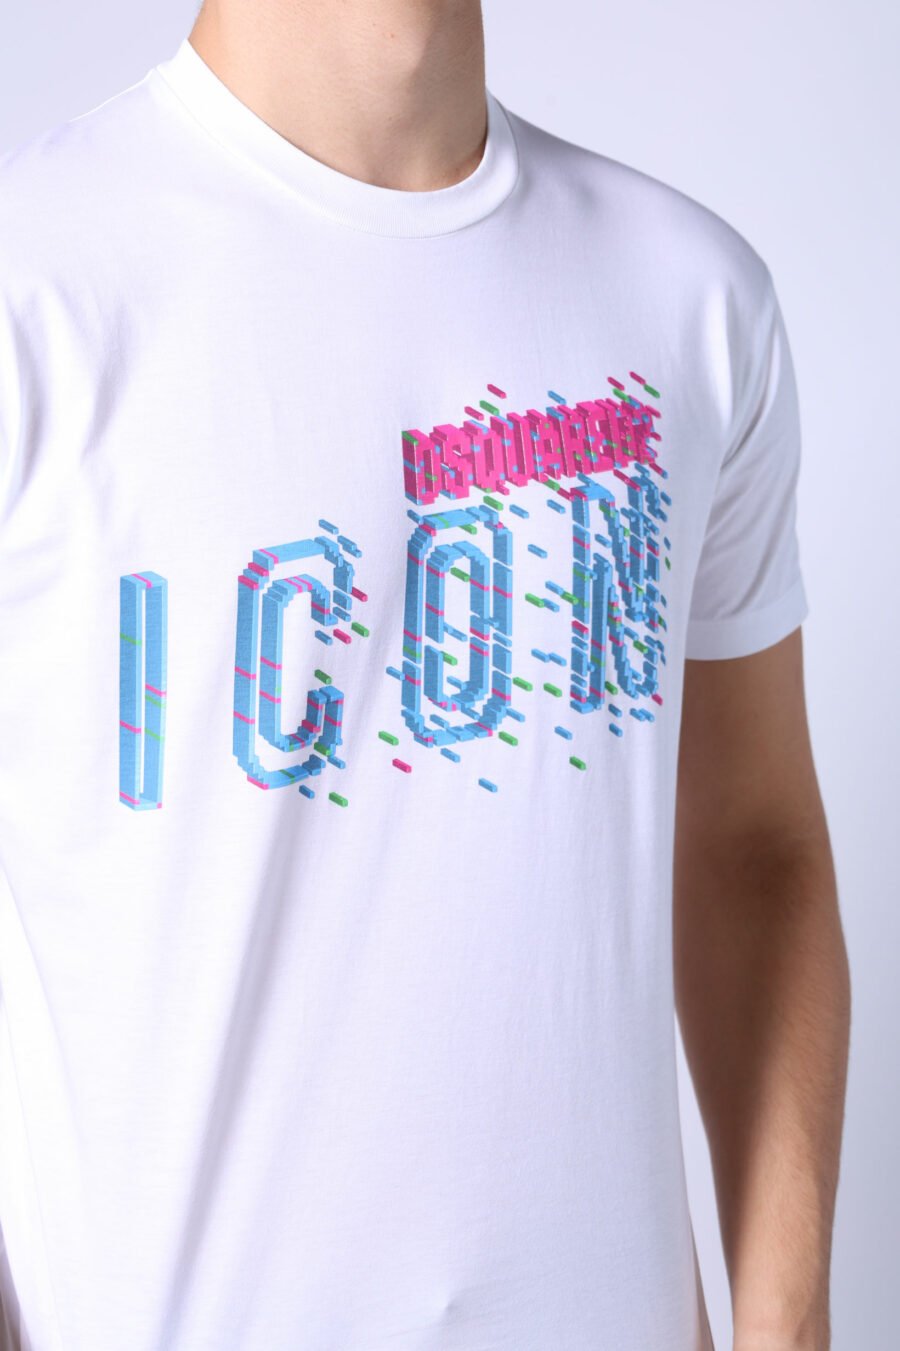 T-shirt blanc avec maxilogo "icon pixeled" turquoise et fuchsia - Untitled Catalog 05355